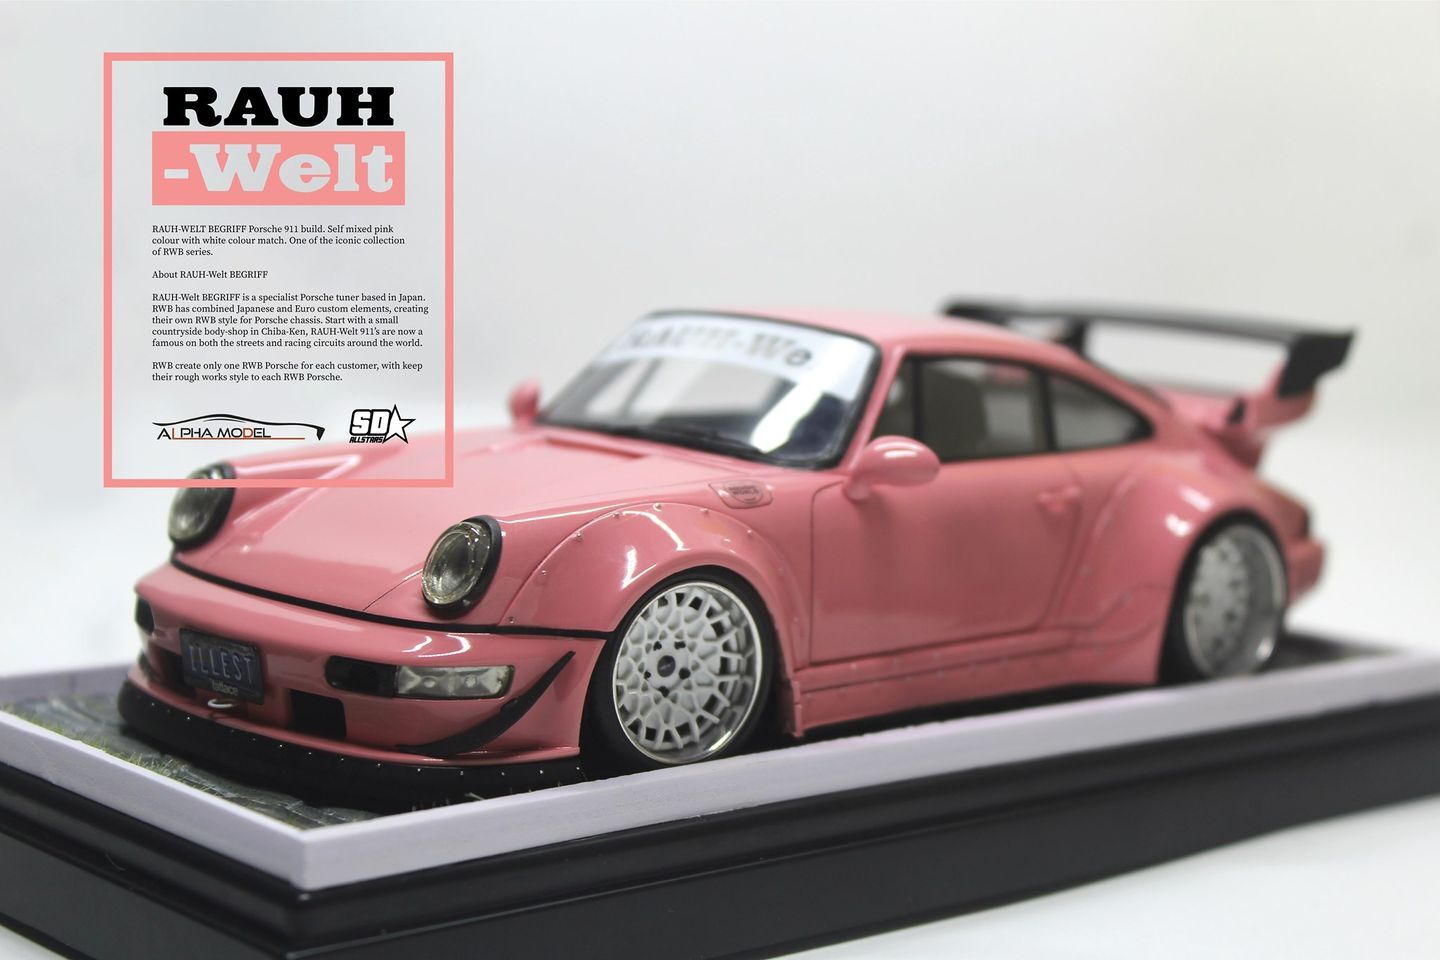 1/24 scale model car kit Porsche Singer Full Detail Kit(HD03-0660